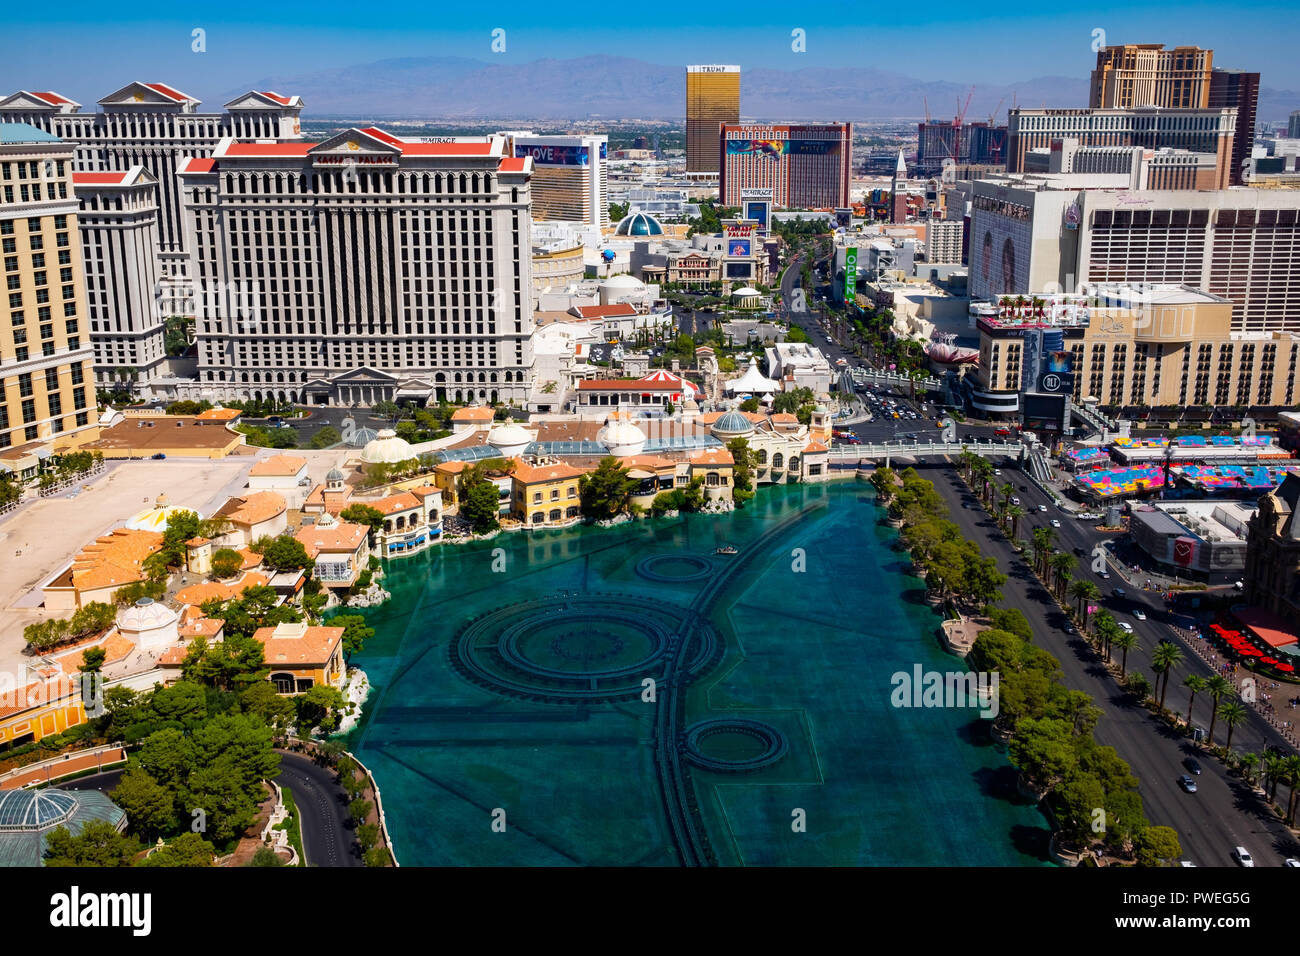 Die Skyline des Las Vegas Strip mit Blick auf den Springbrunnen des Bellagio Hotels Stockfoto